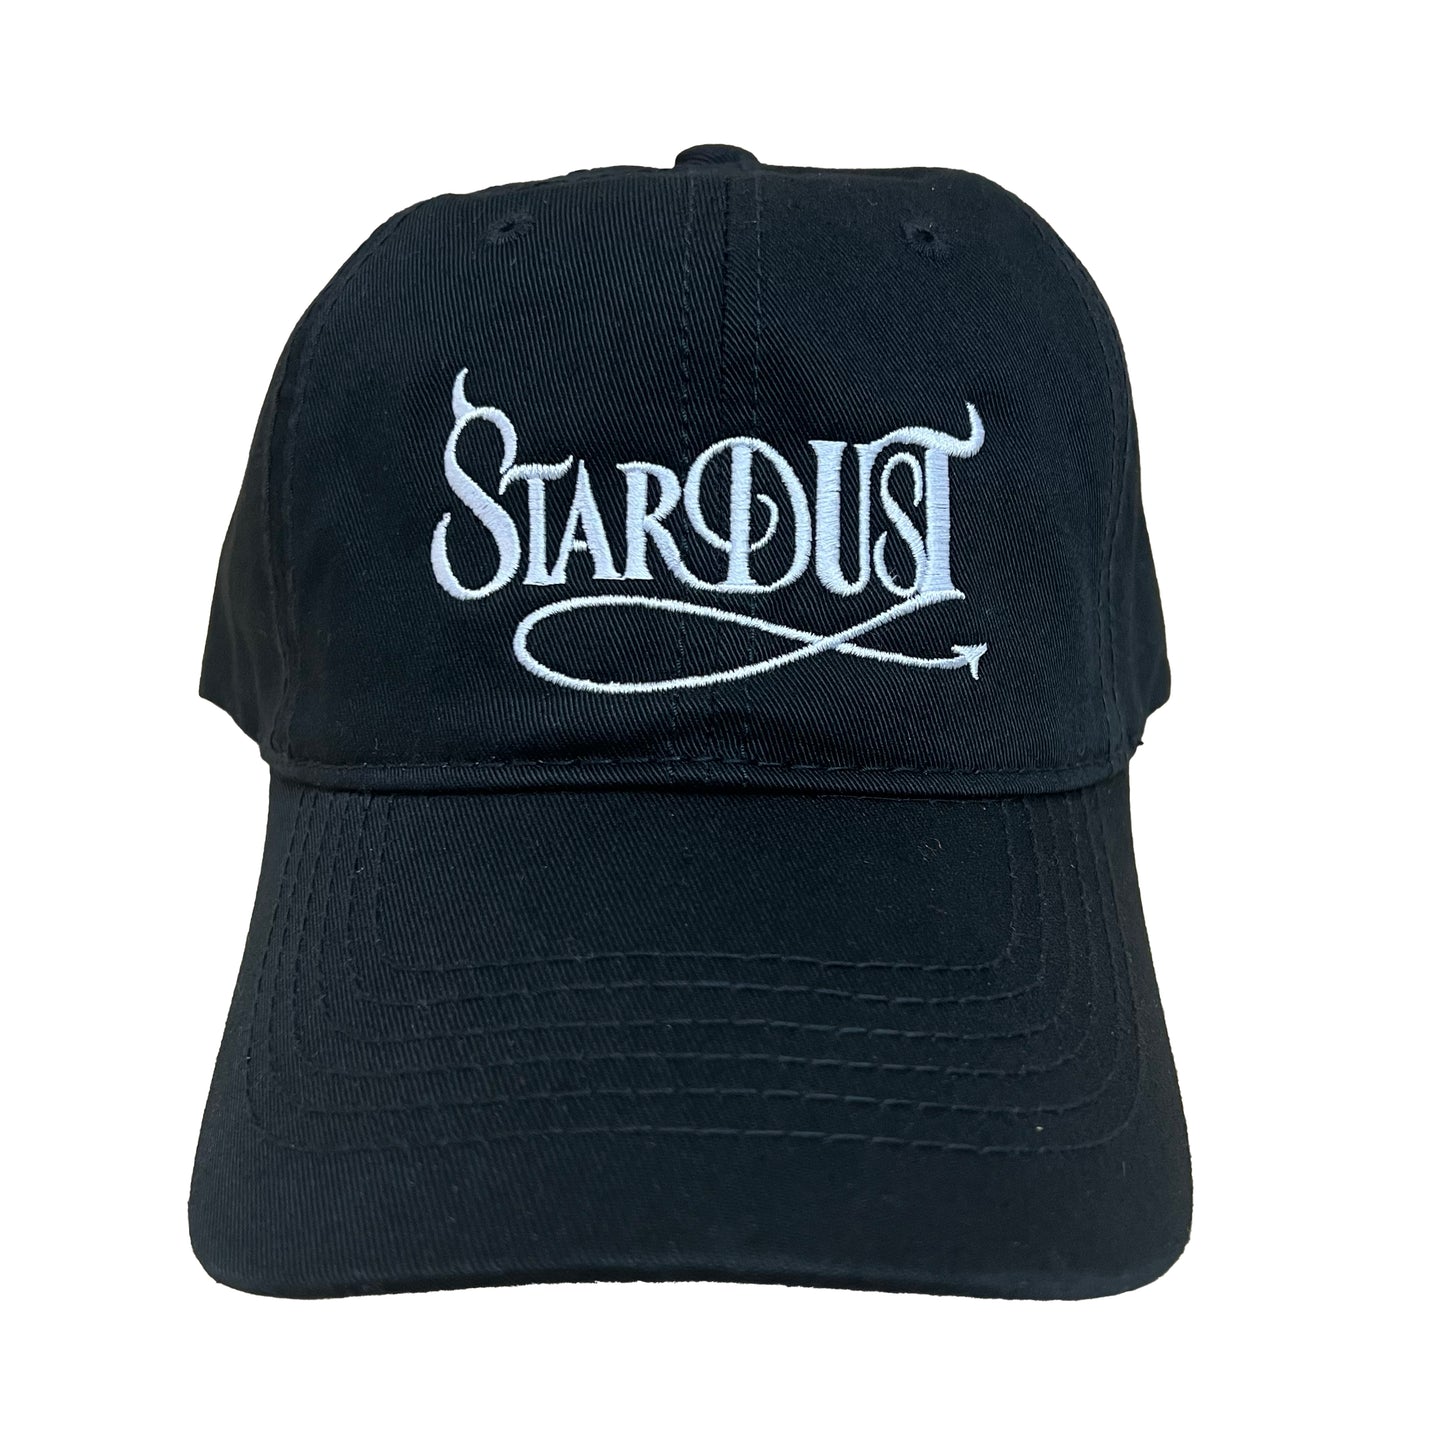 Stardust Devil's Wanderlust Dad Hat 001 Black / White